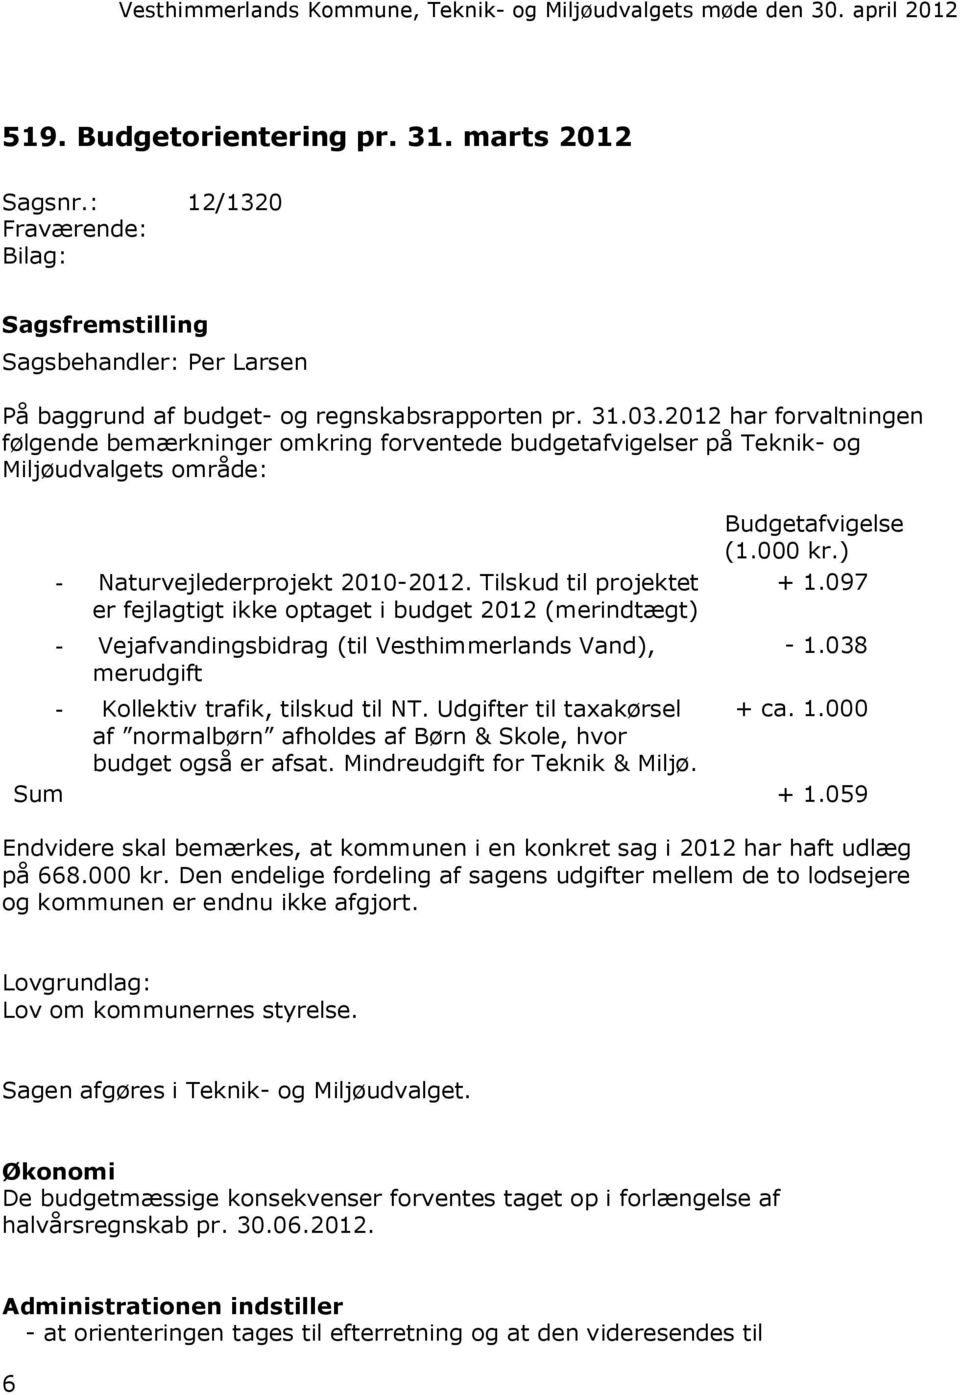 Tilskud til projektet er fejlagtigt ikke optaget i budget 2012 (merindtægt) - Vejafvandingsbidrag (til Vesthimmerlands Vand), merudgift Budgetafvigelse (1.000 kr.) + 1.097-1.